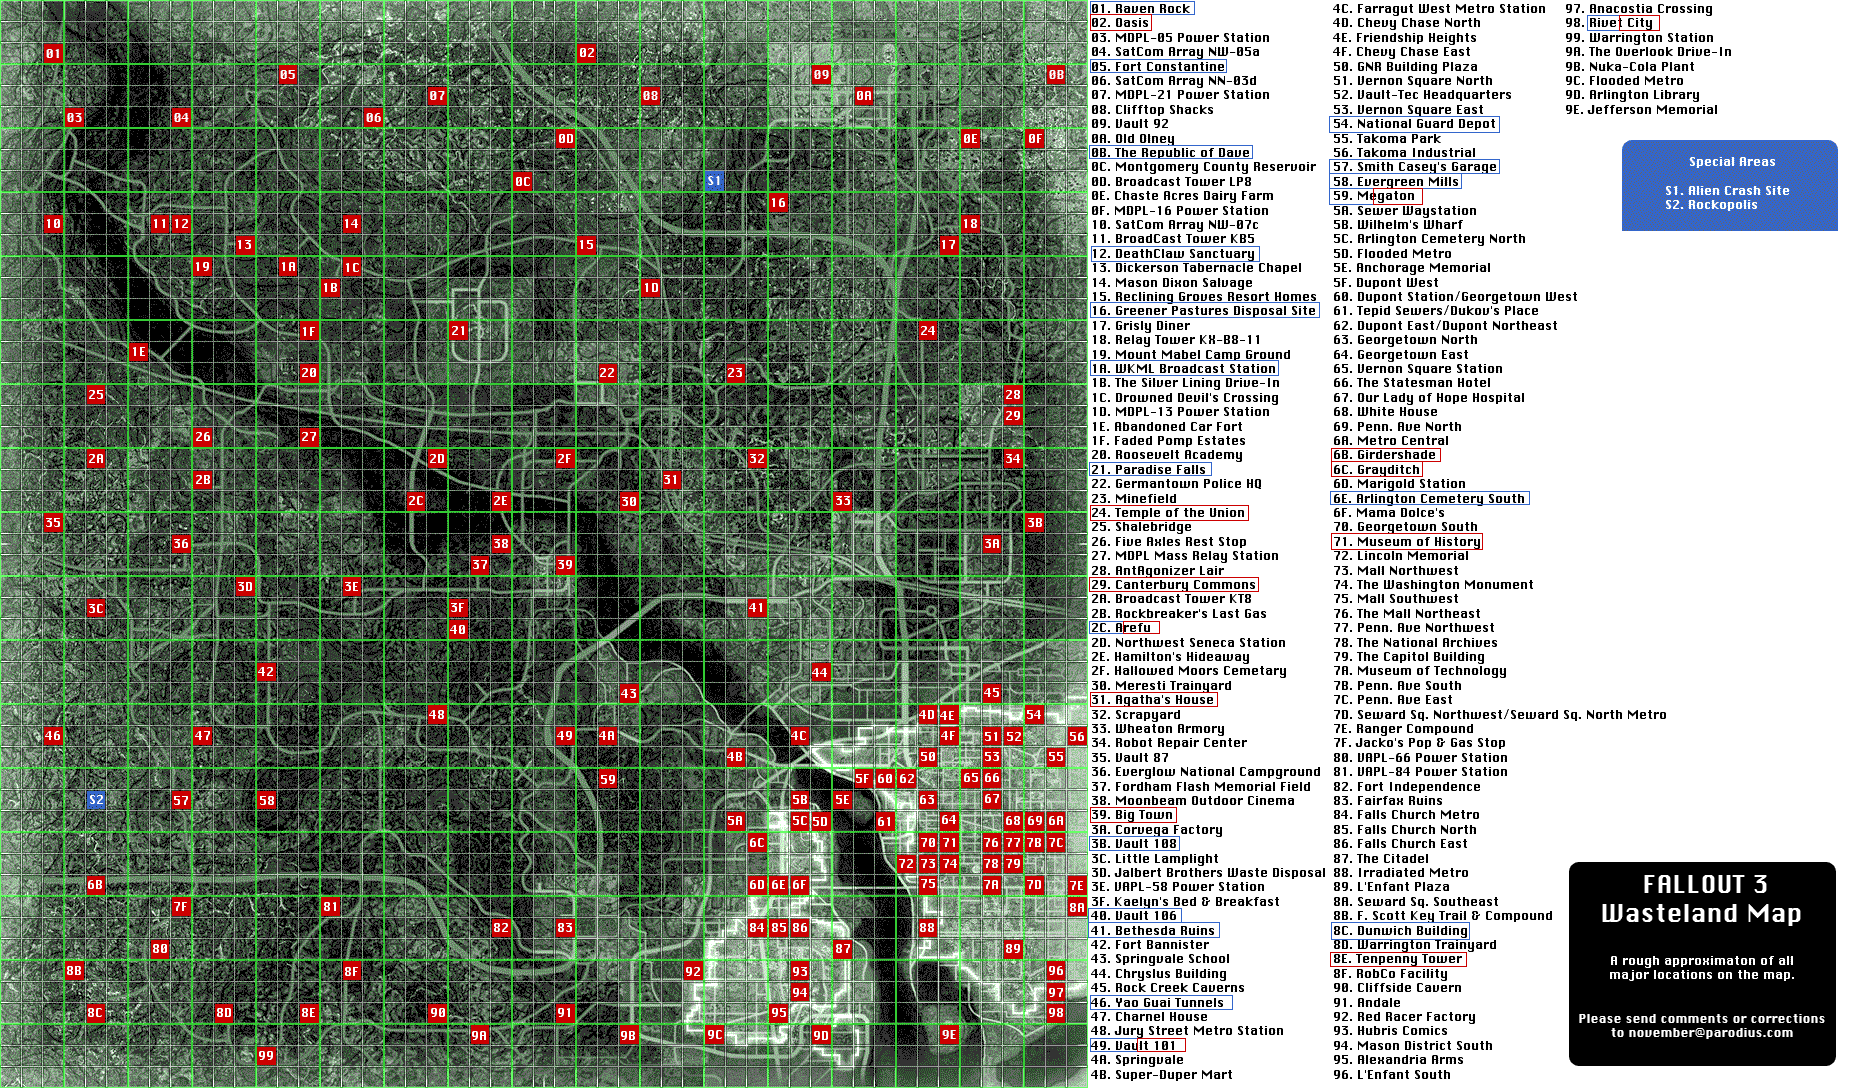 Fallout 4 руководство по тайным операциям сша на карте фото 61